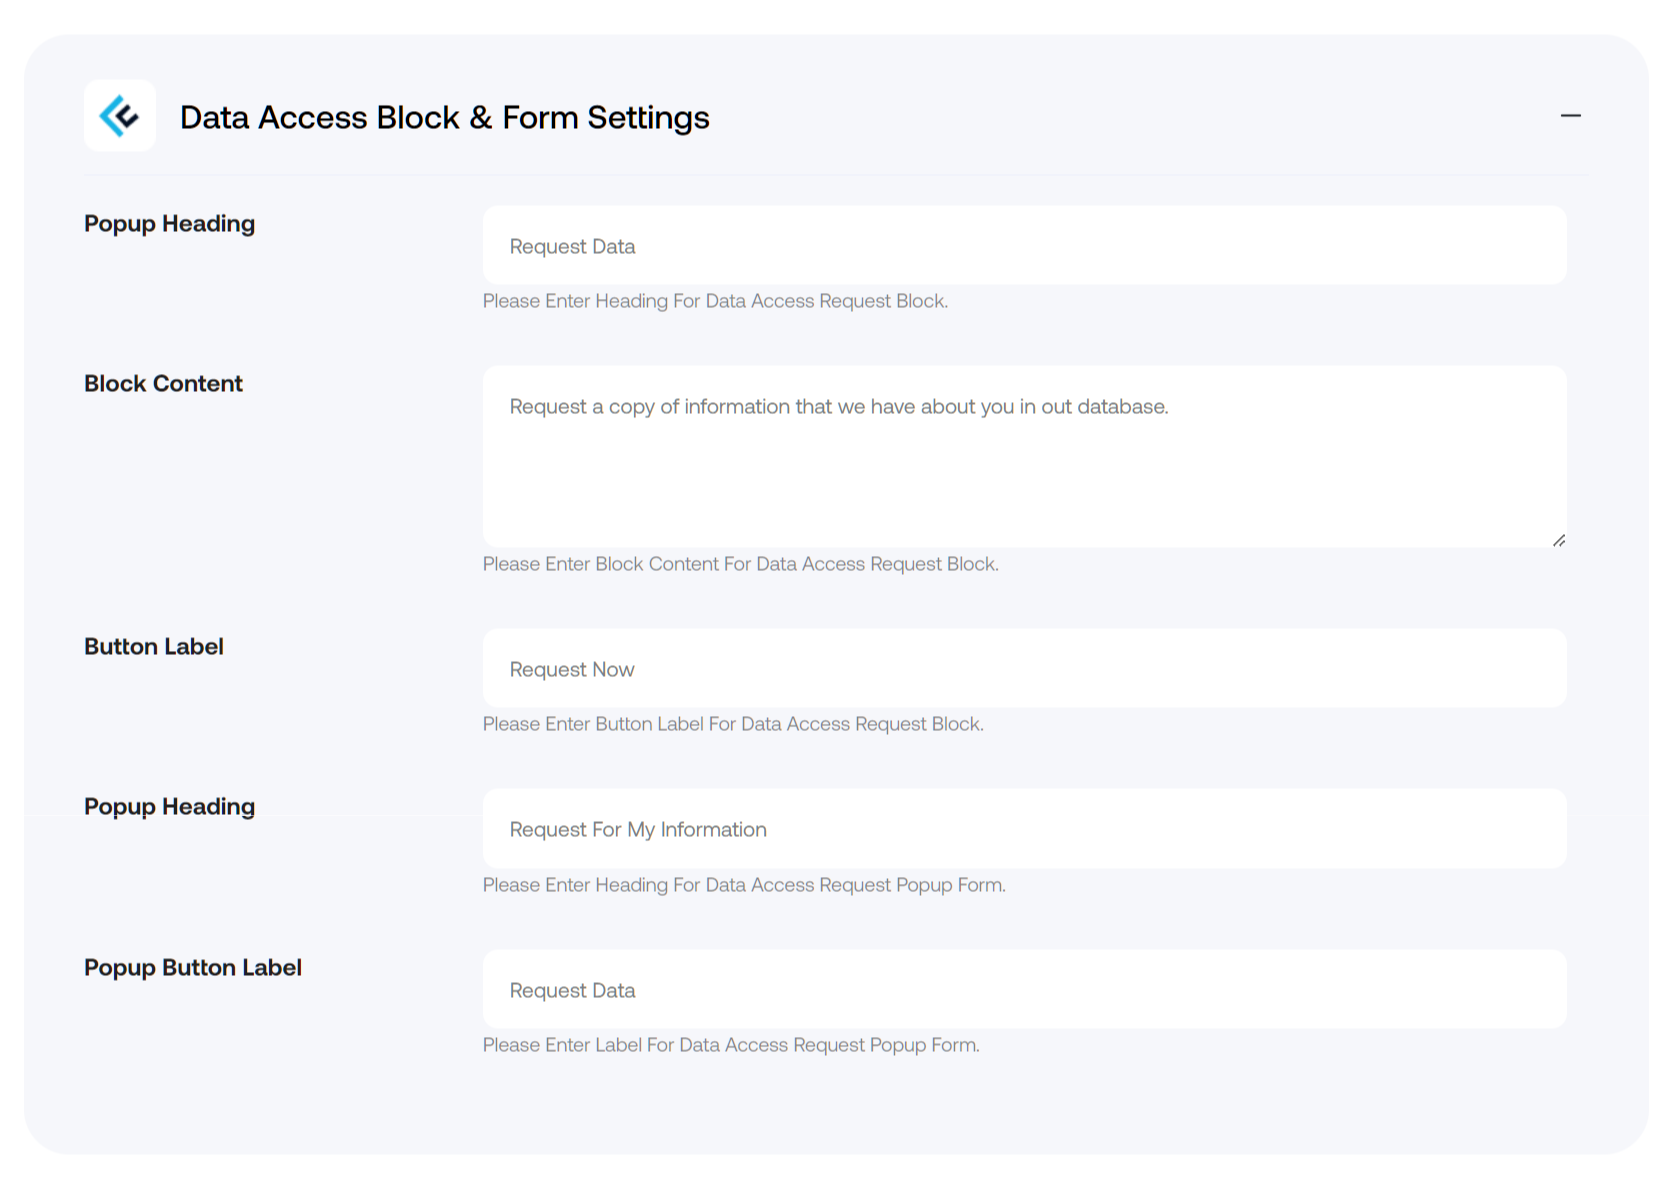 Data Access Block & Form Settings